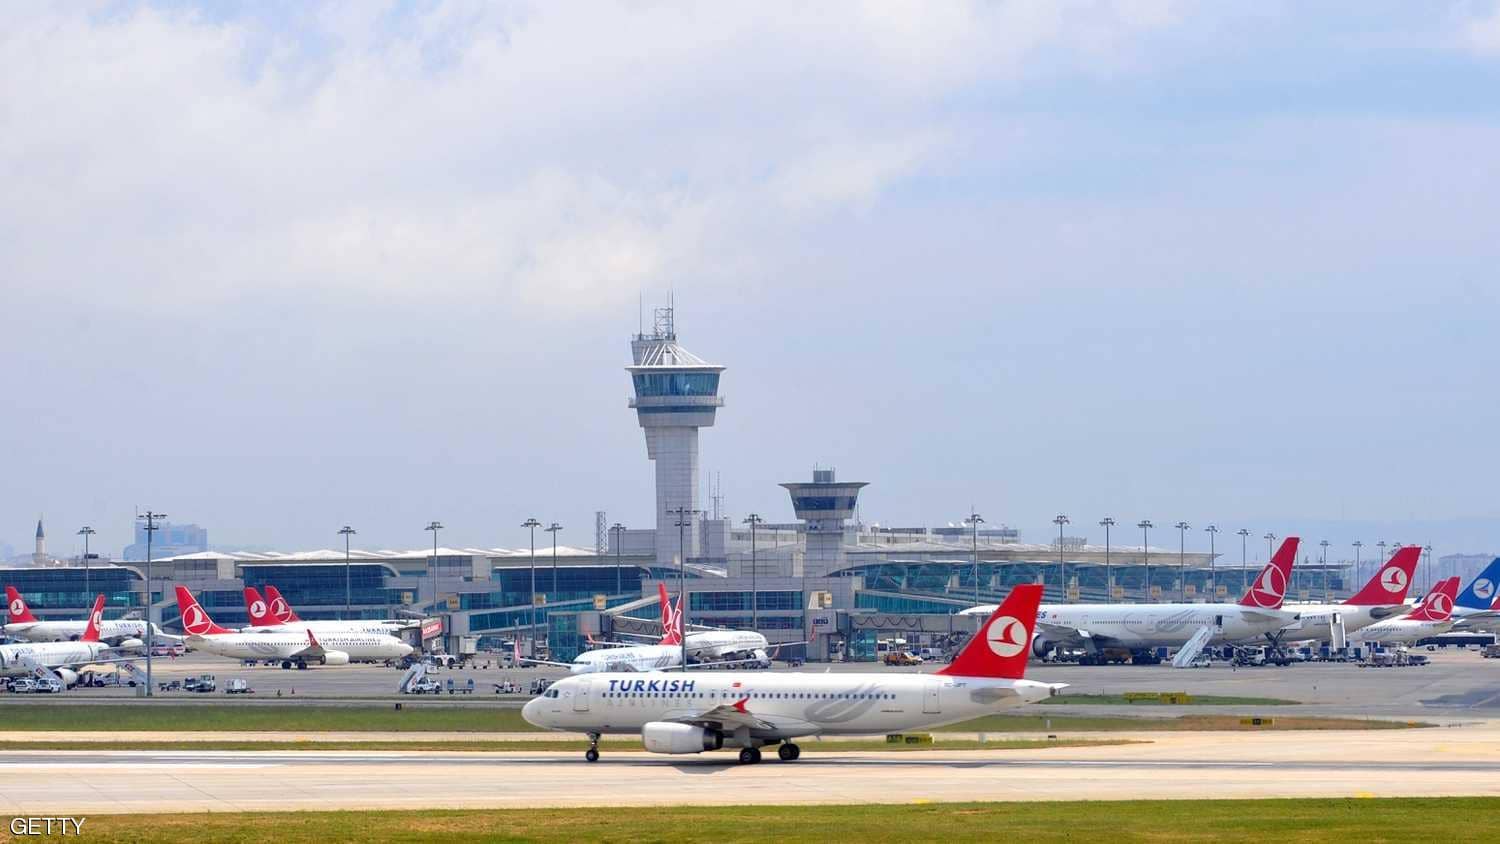  صورة من مطار أتاتورك بمدينة إسطنبول التركية